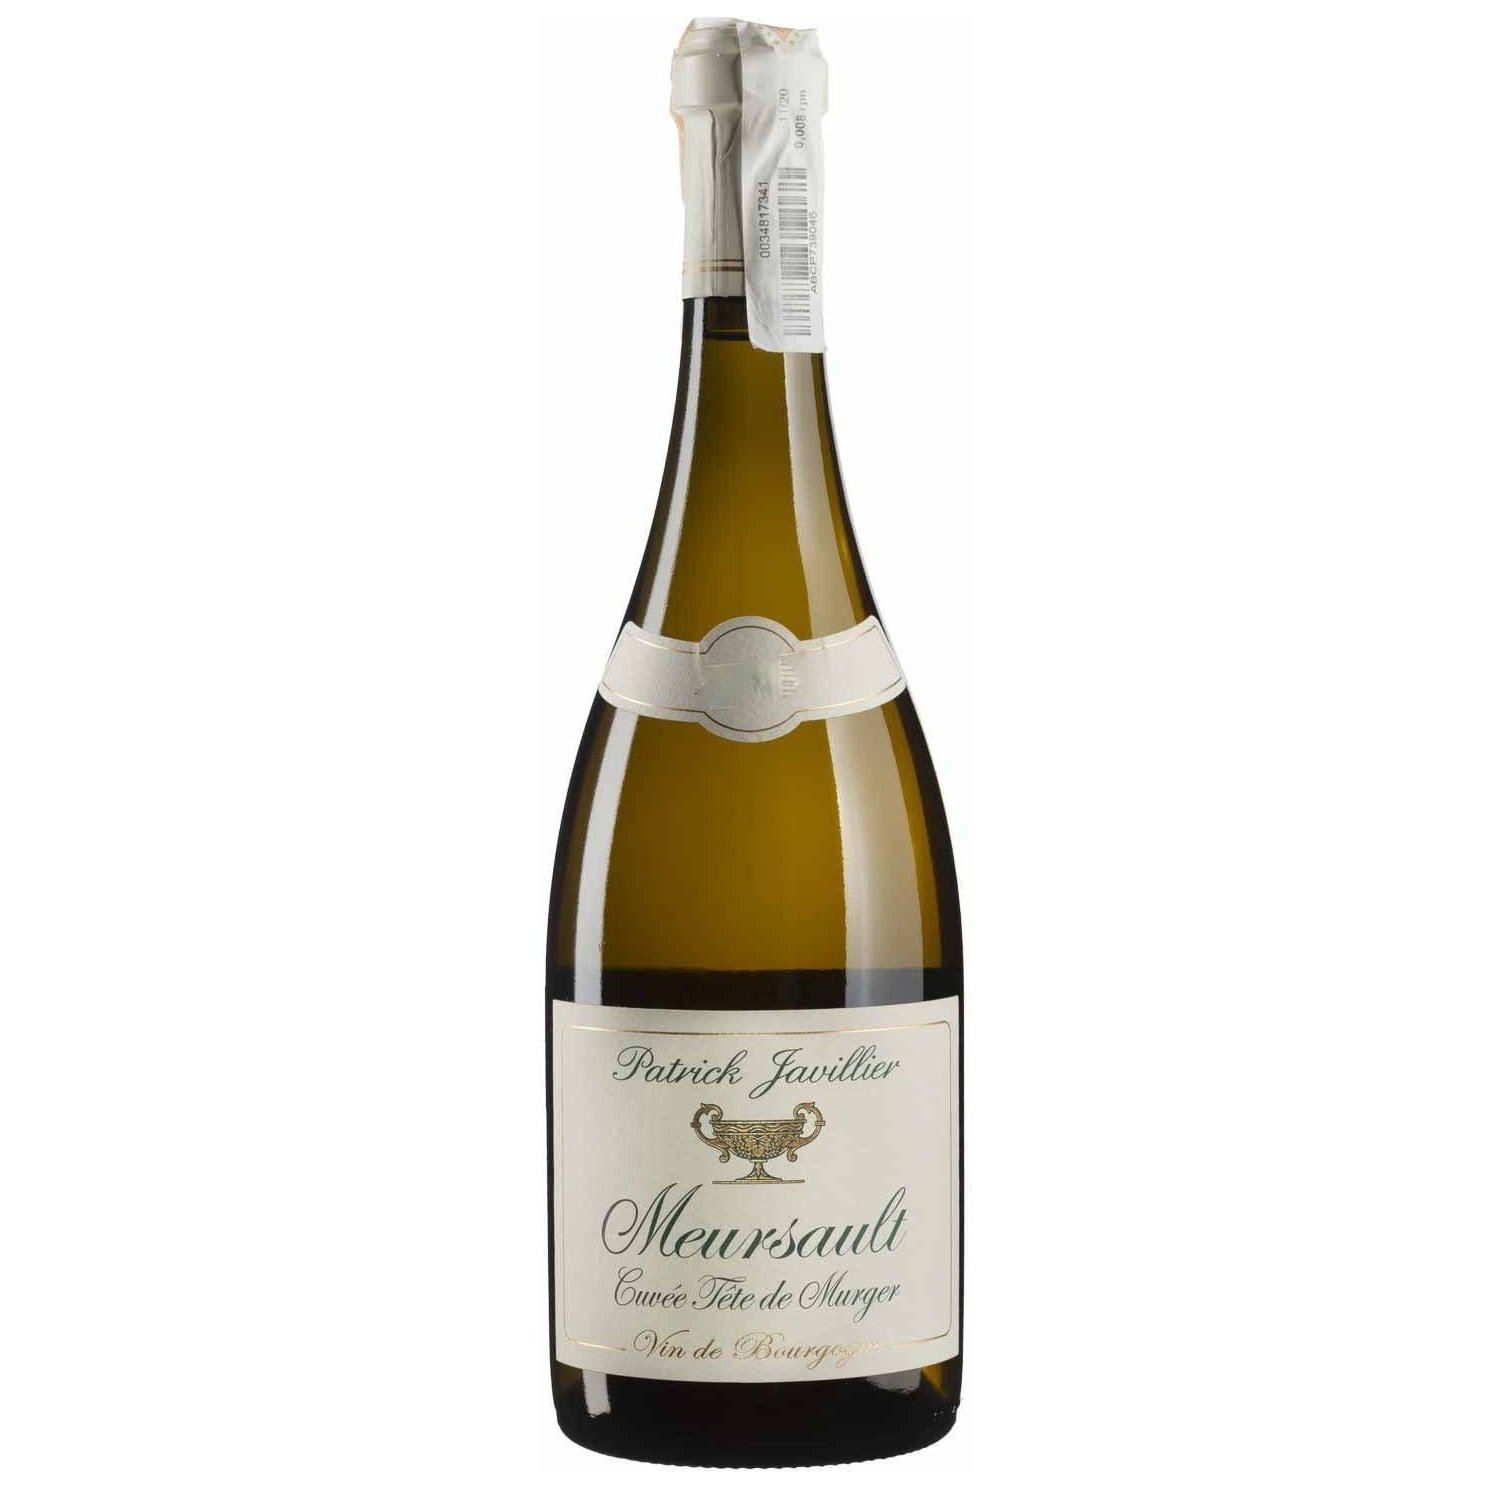 Вино Patrick Javillier Meursault Cuvee Tete de Murger 2020, белое, сухое, 0,75 л (W3869) - фото 1